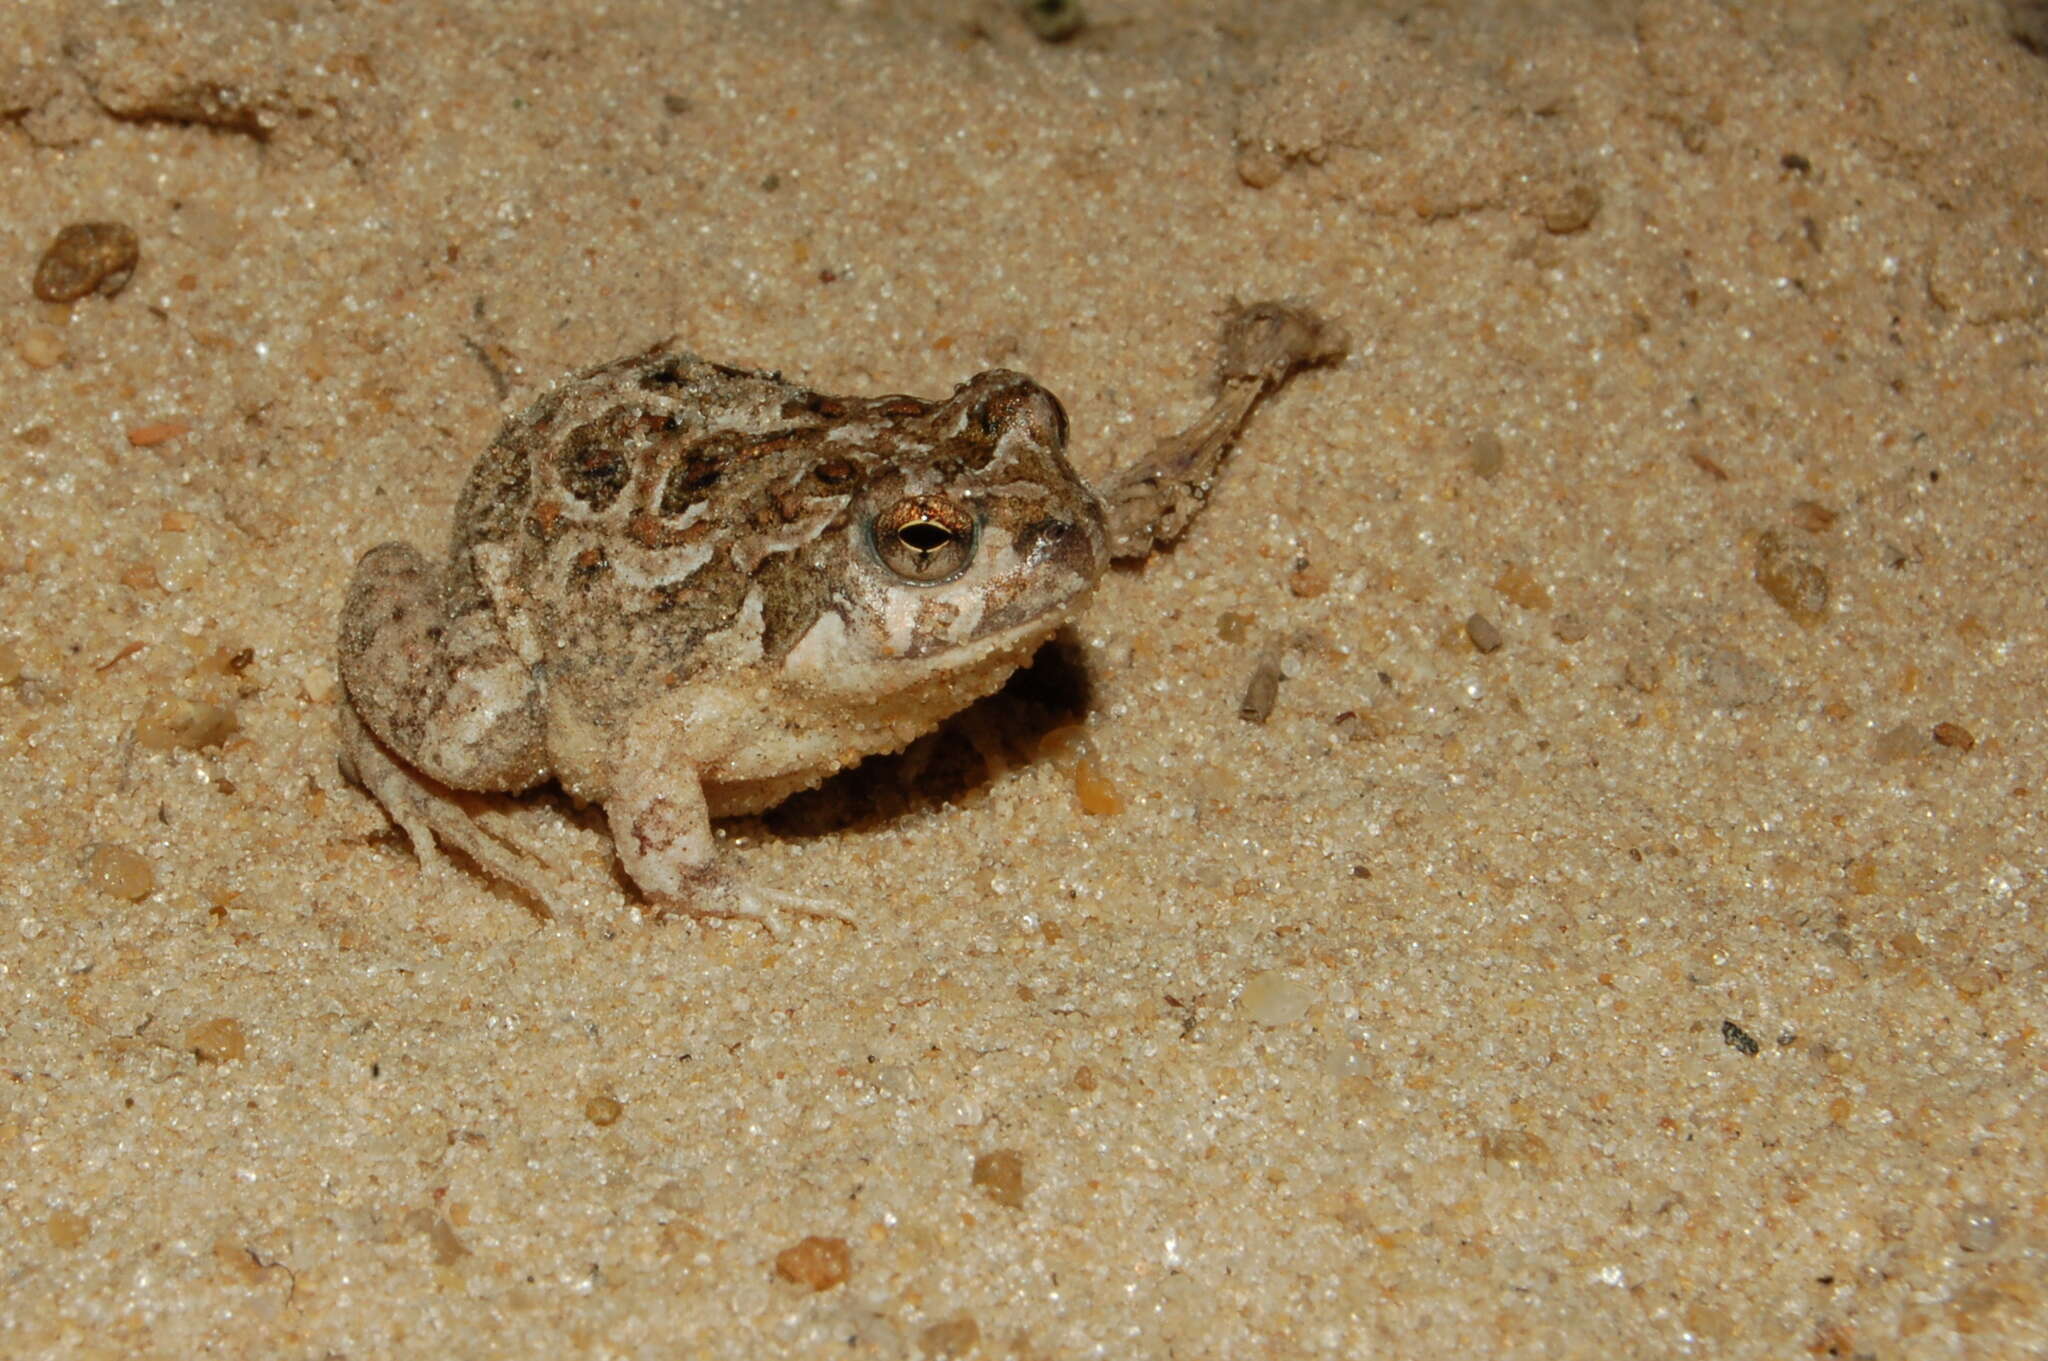 Image of Santa Fe Dwarf Frog